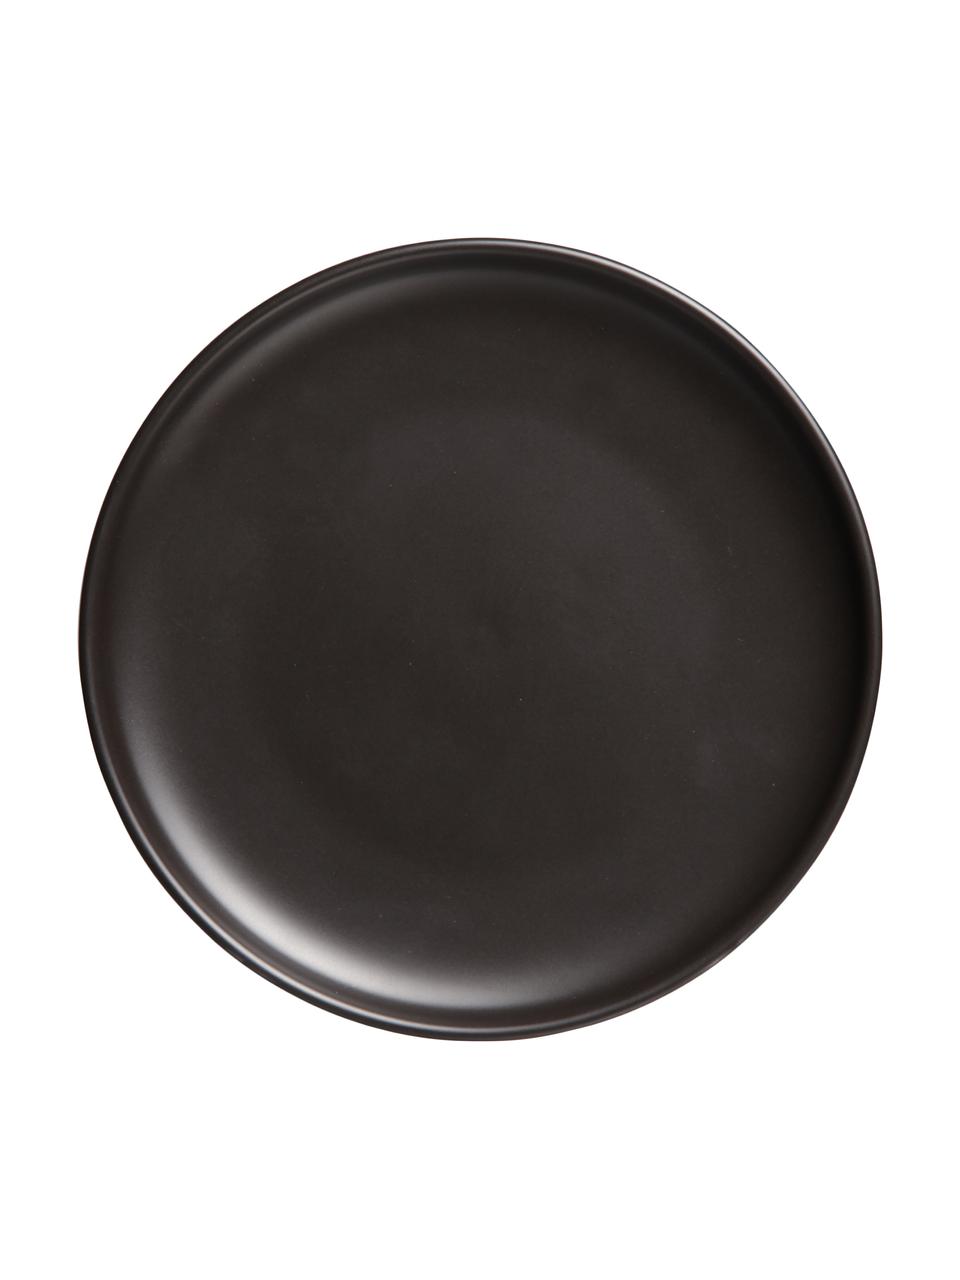 Talerz duży Okinawa, 4 szt., Ceramika, Czarny, matowy, Ø 27 cm